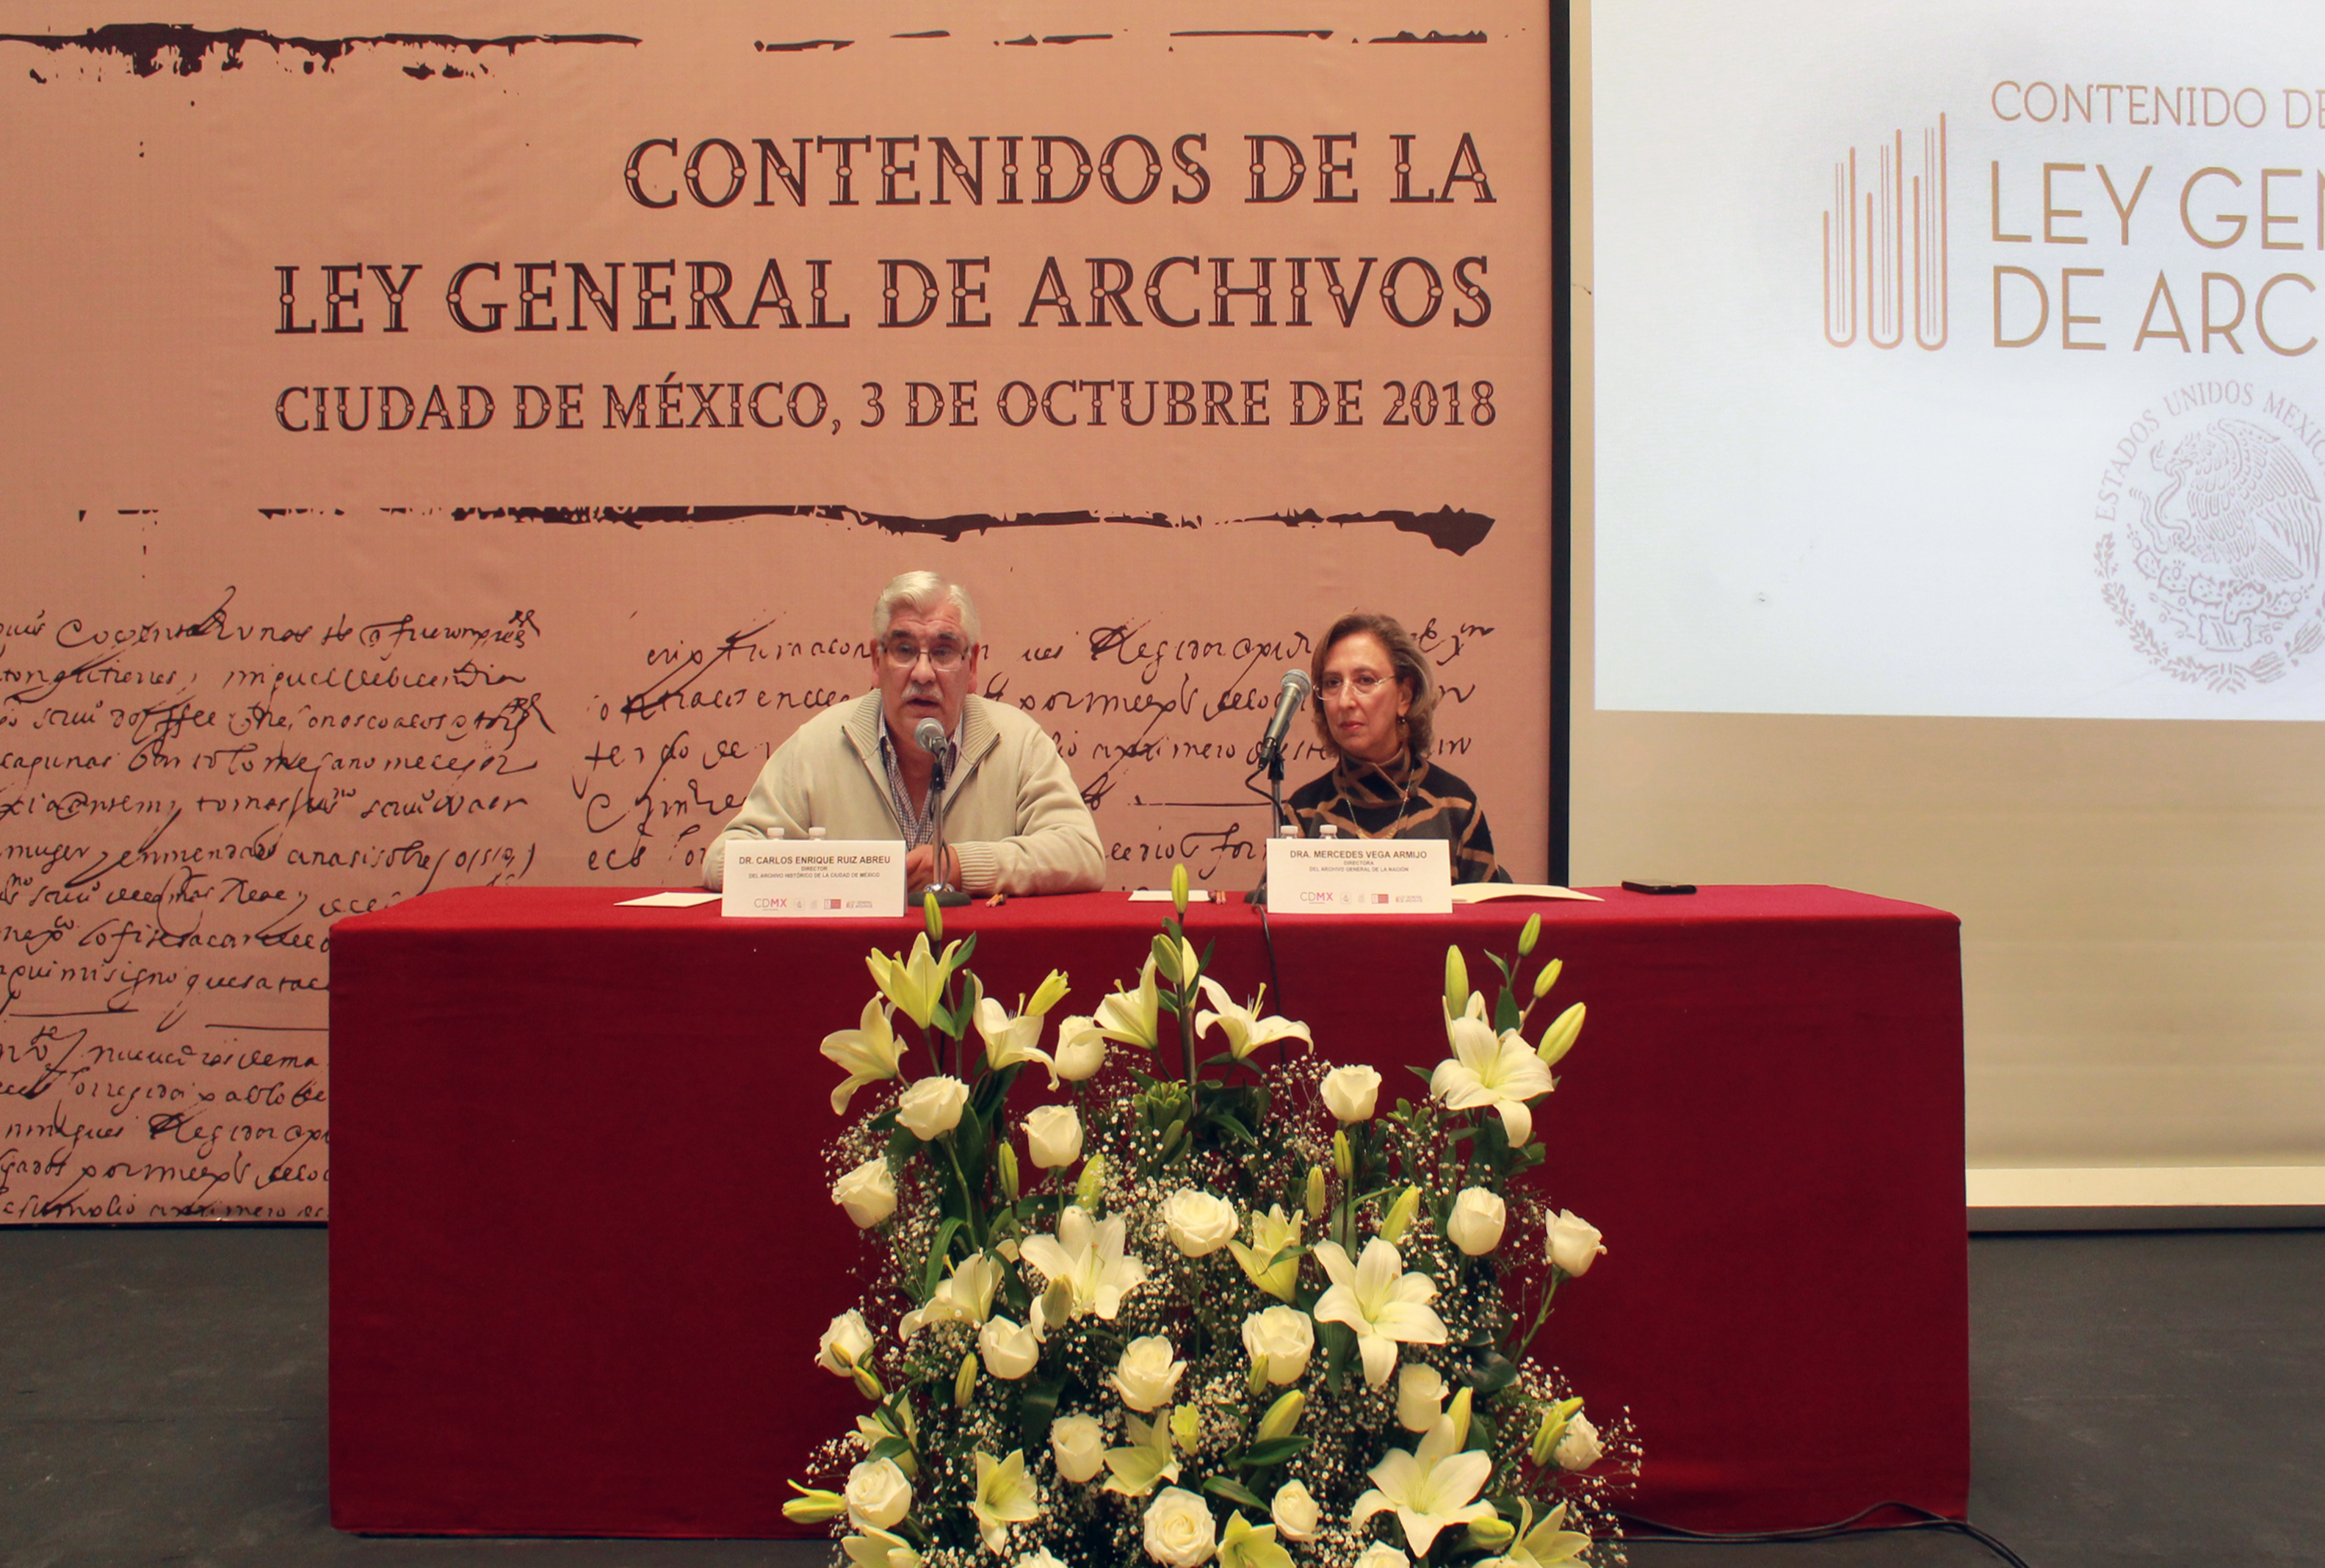 Conferencia “Contenidos de la Ley General de Archivos”